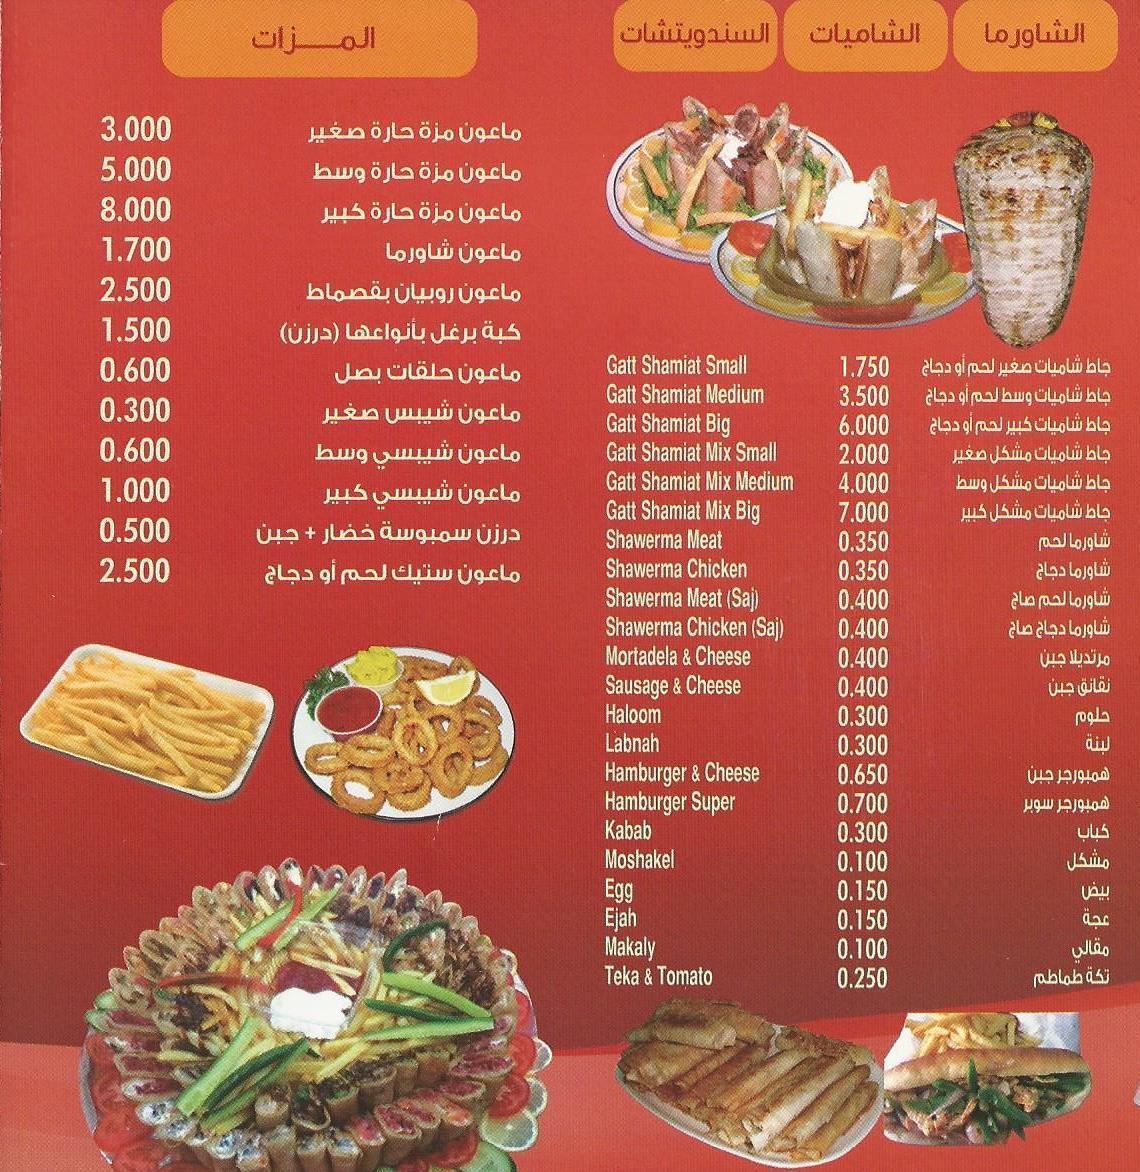 ارقام وفروع وقائمة مطعم كأس الخليج